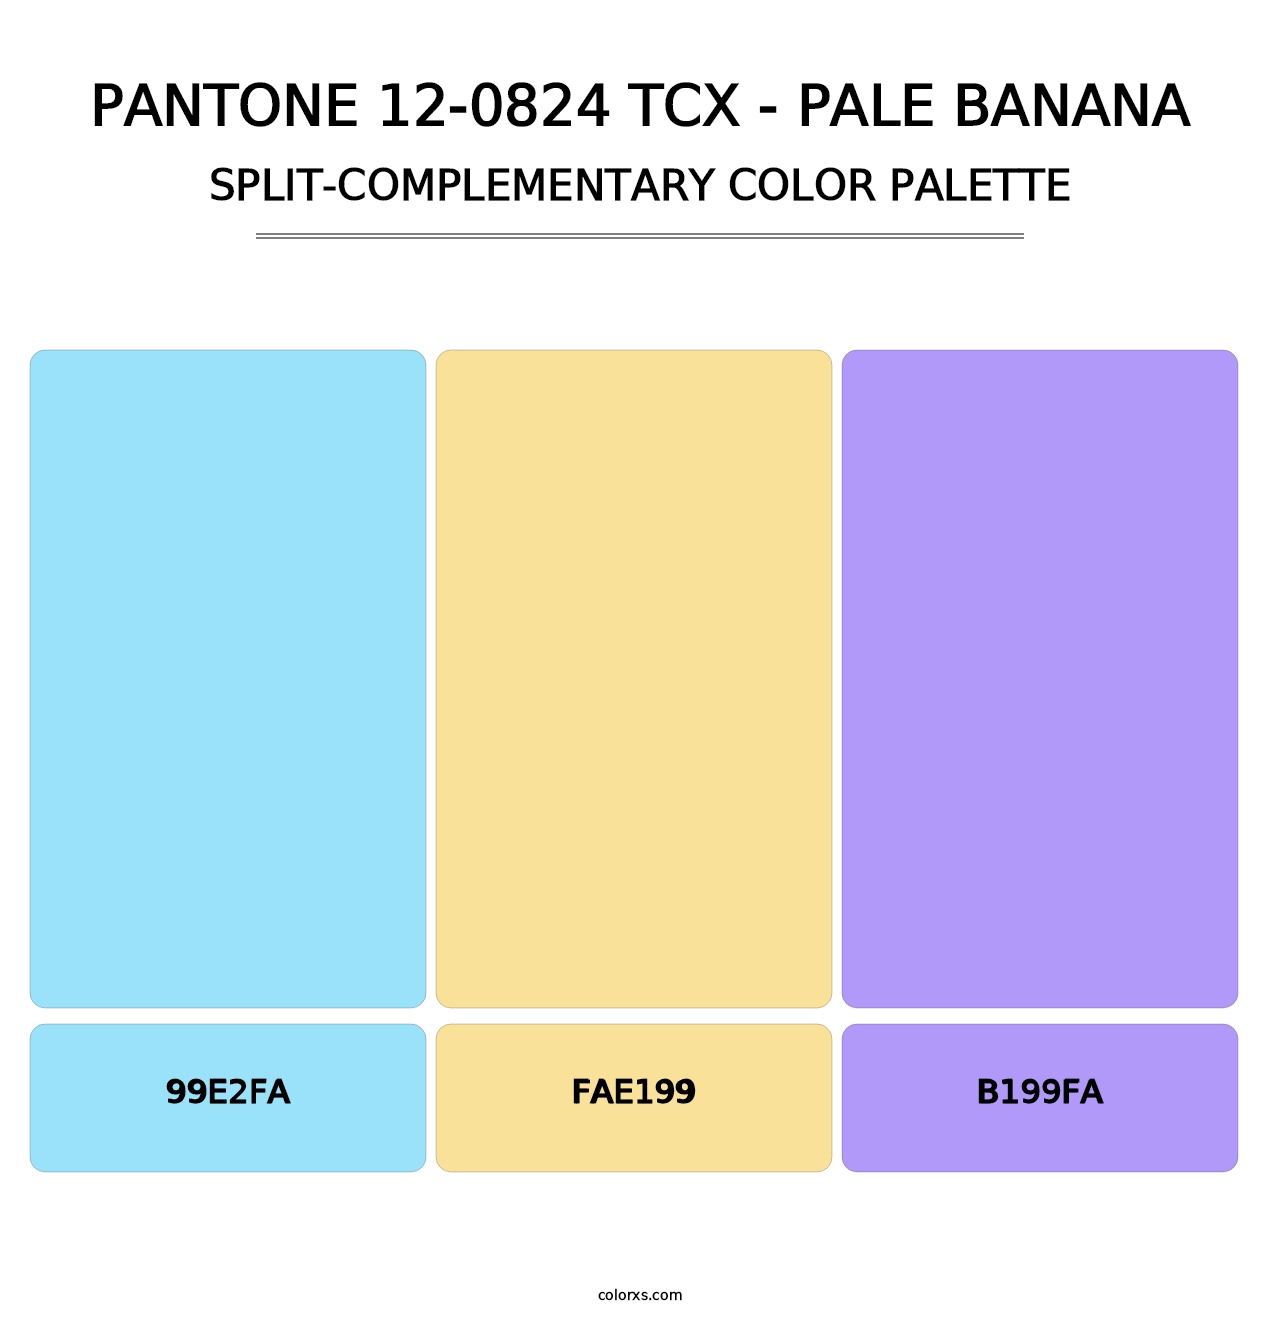 PANTONE 12-0824 TCX - Pale Banana - Split-Complementary Color Palette